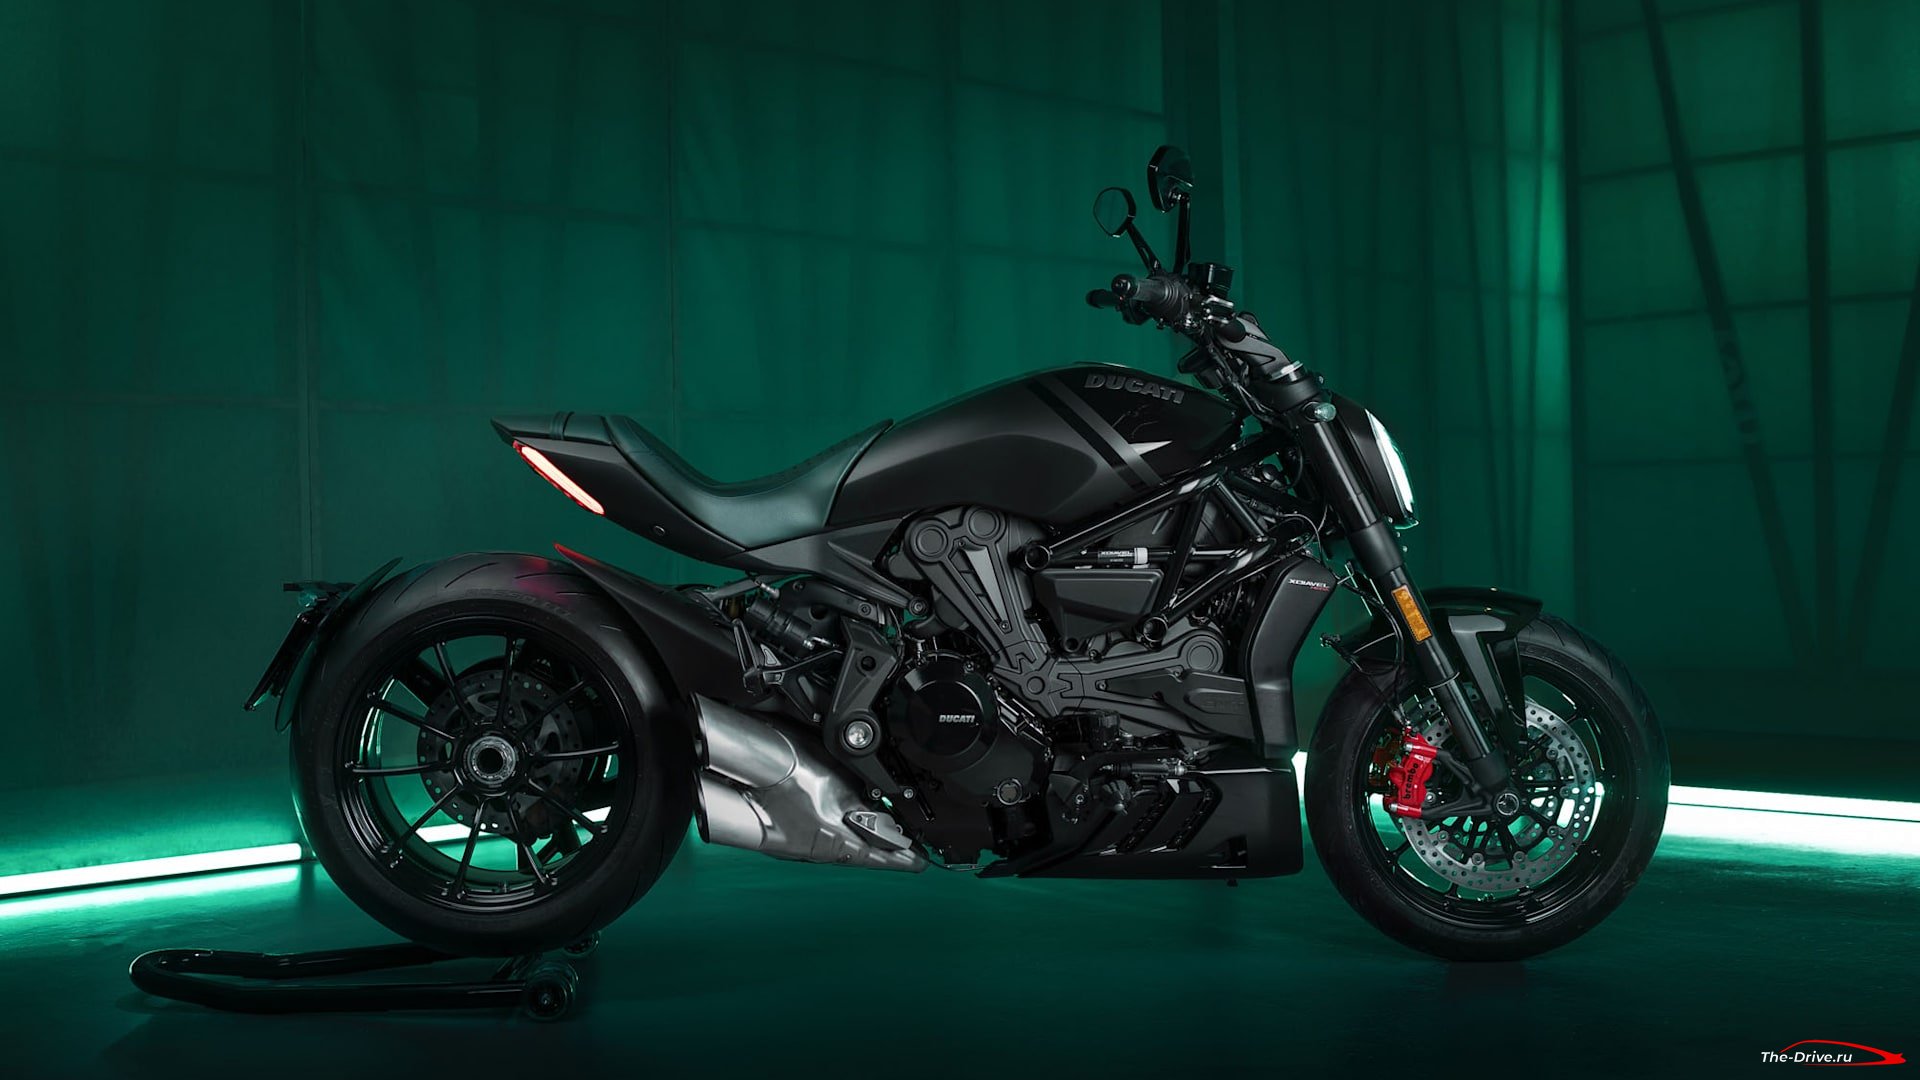 Ducati XDiavel Nera - мотоцикл, оборудованный как роскошный седан.